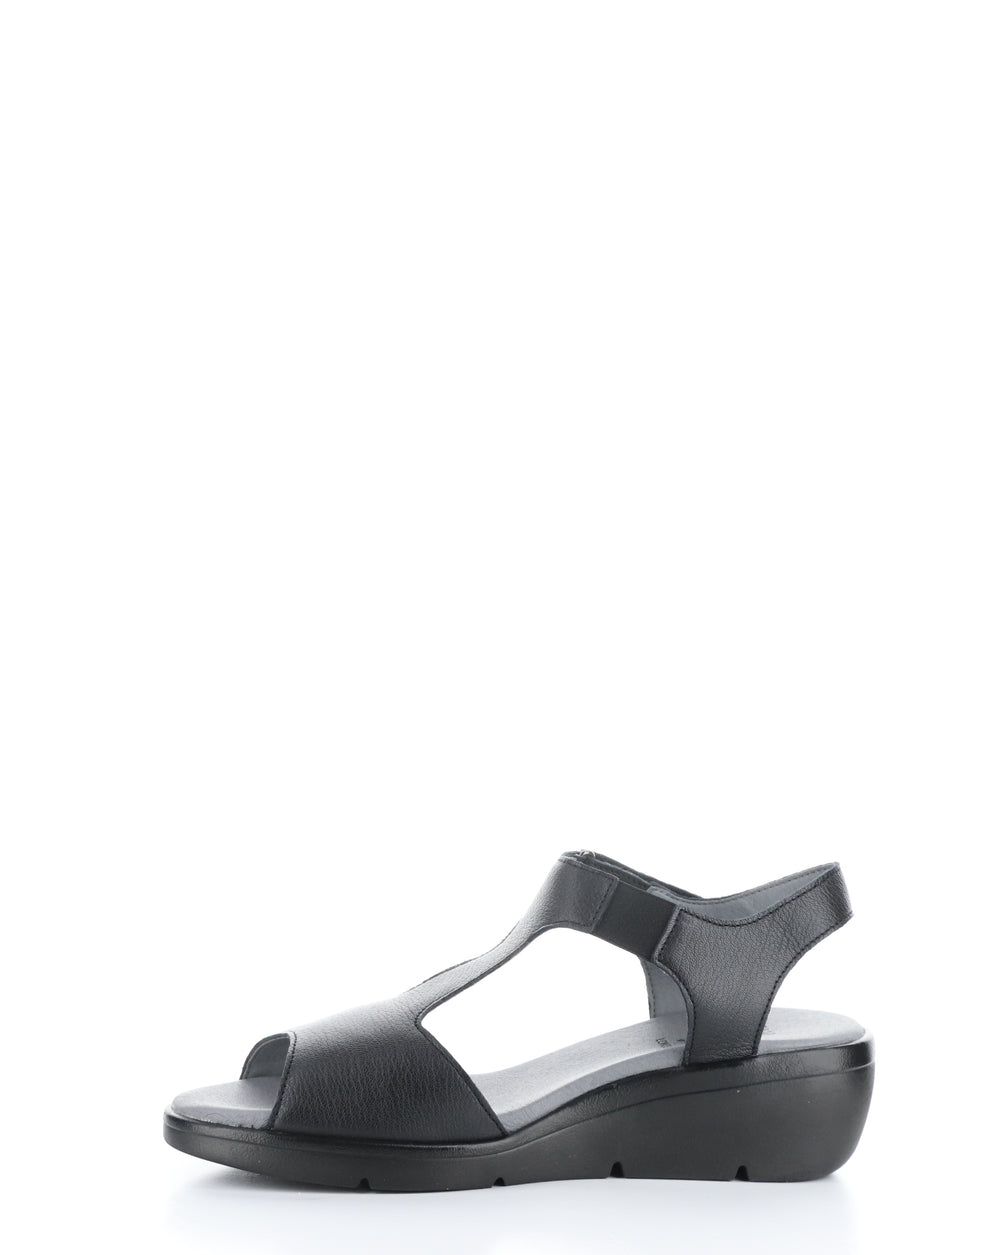 NOVA932FLY 000 BLACK Velcro Sandals